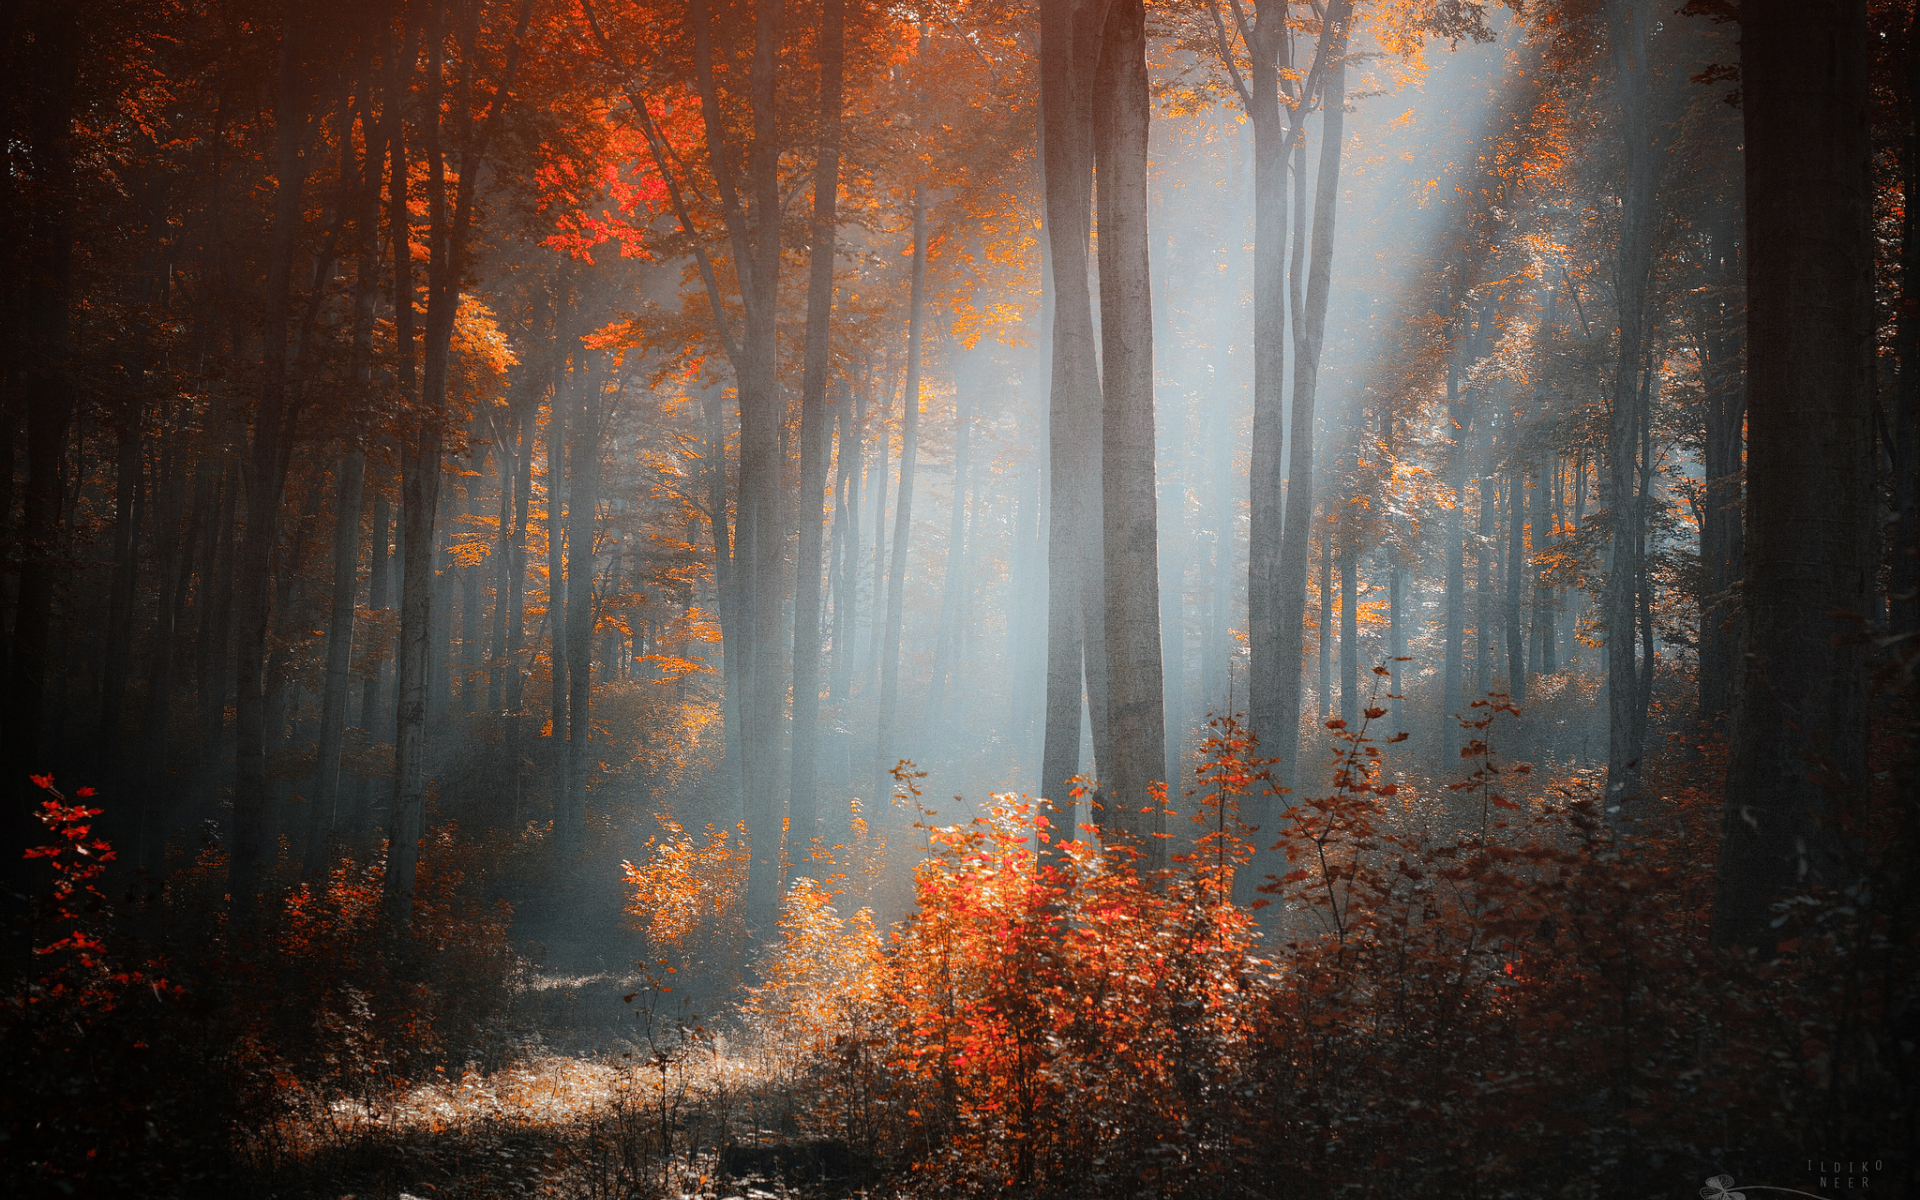 осень, солнечный, лес, свет, деревья, кусты, ildiko neer